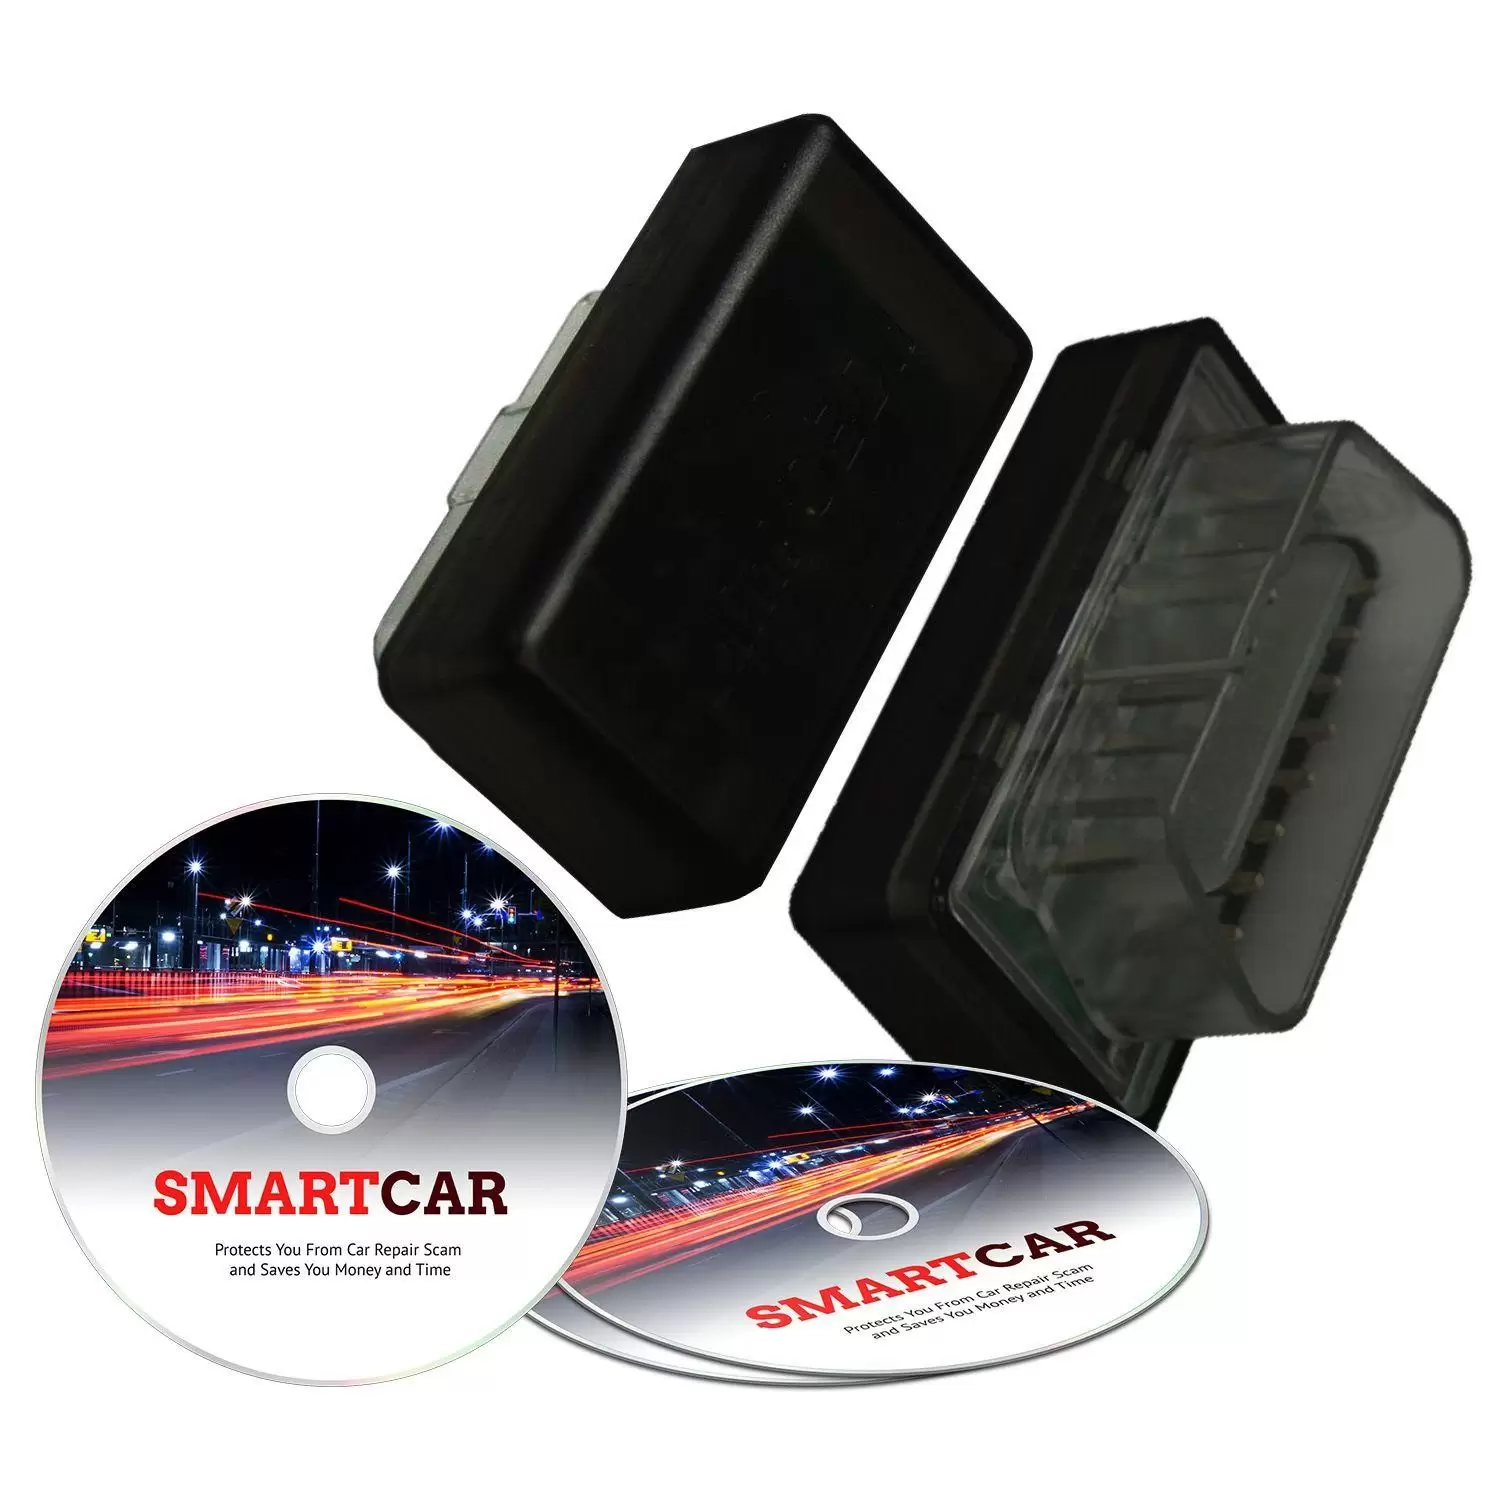 Key Features of SmartCar Diagnostic Tool